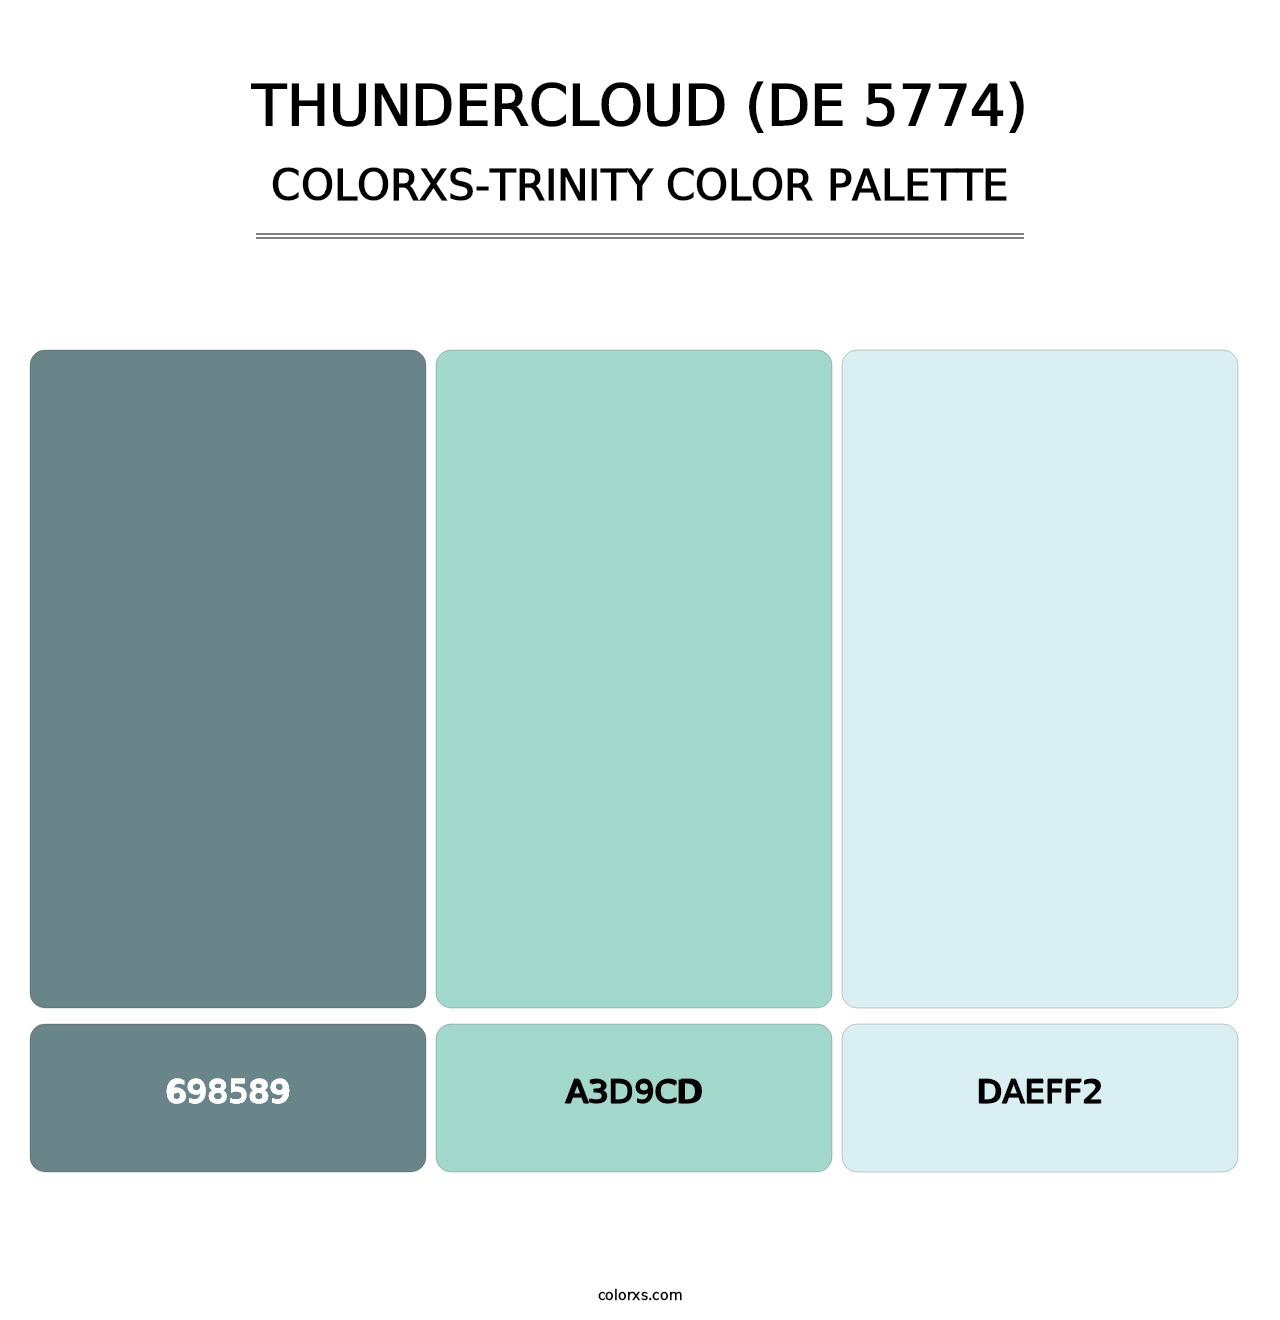 Thundercloud (DE 5774) - Colorxs Trinity Palette